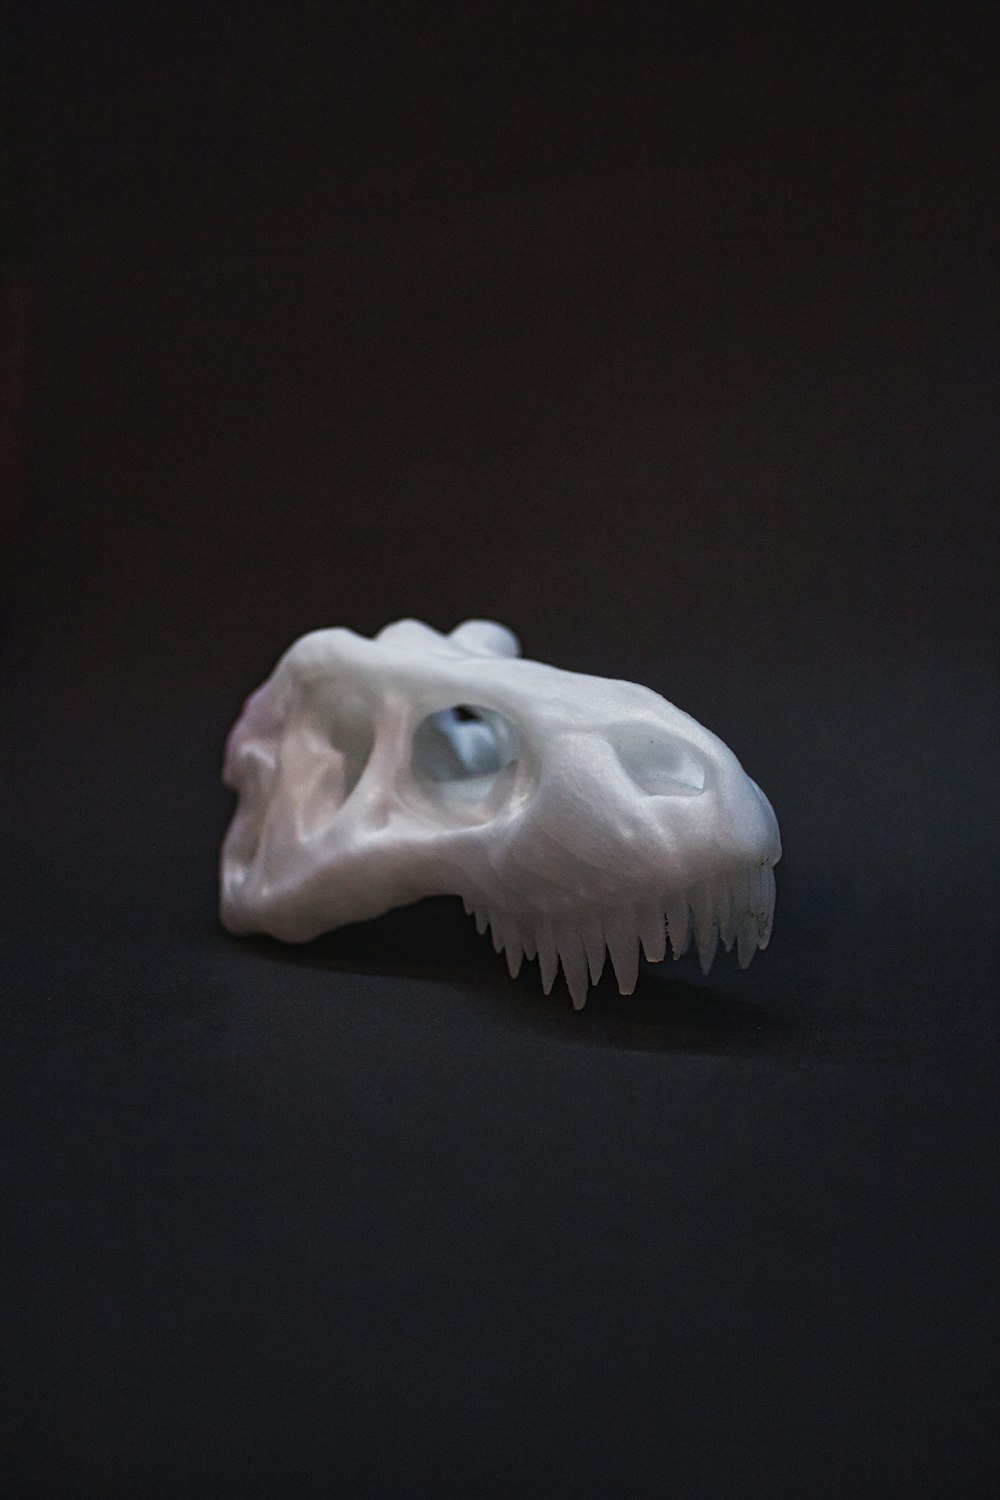 white animal skull on black surface